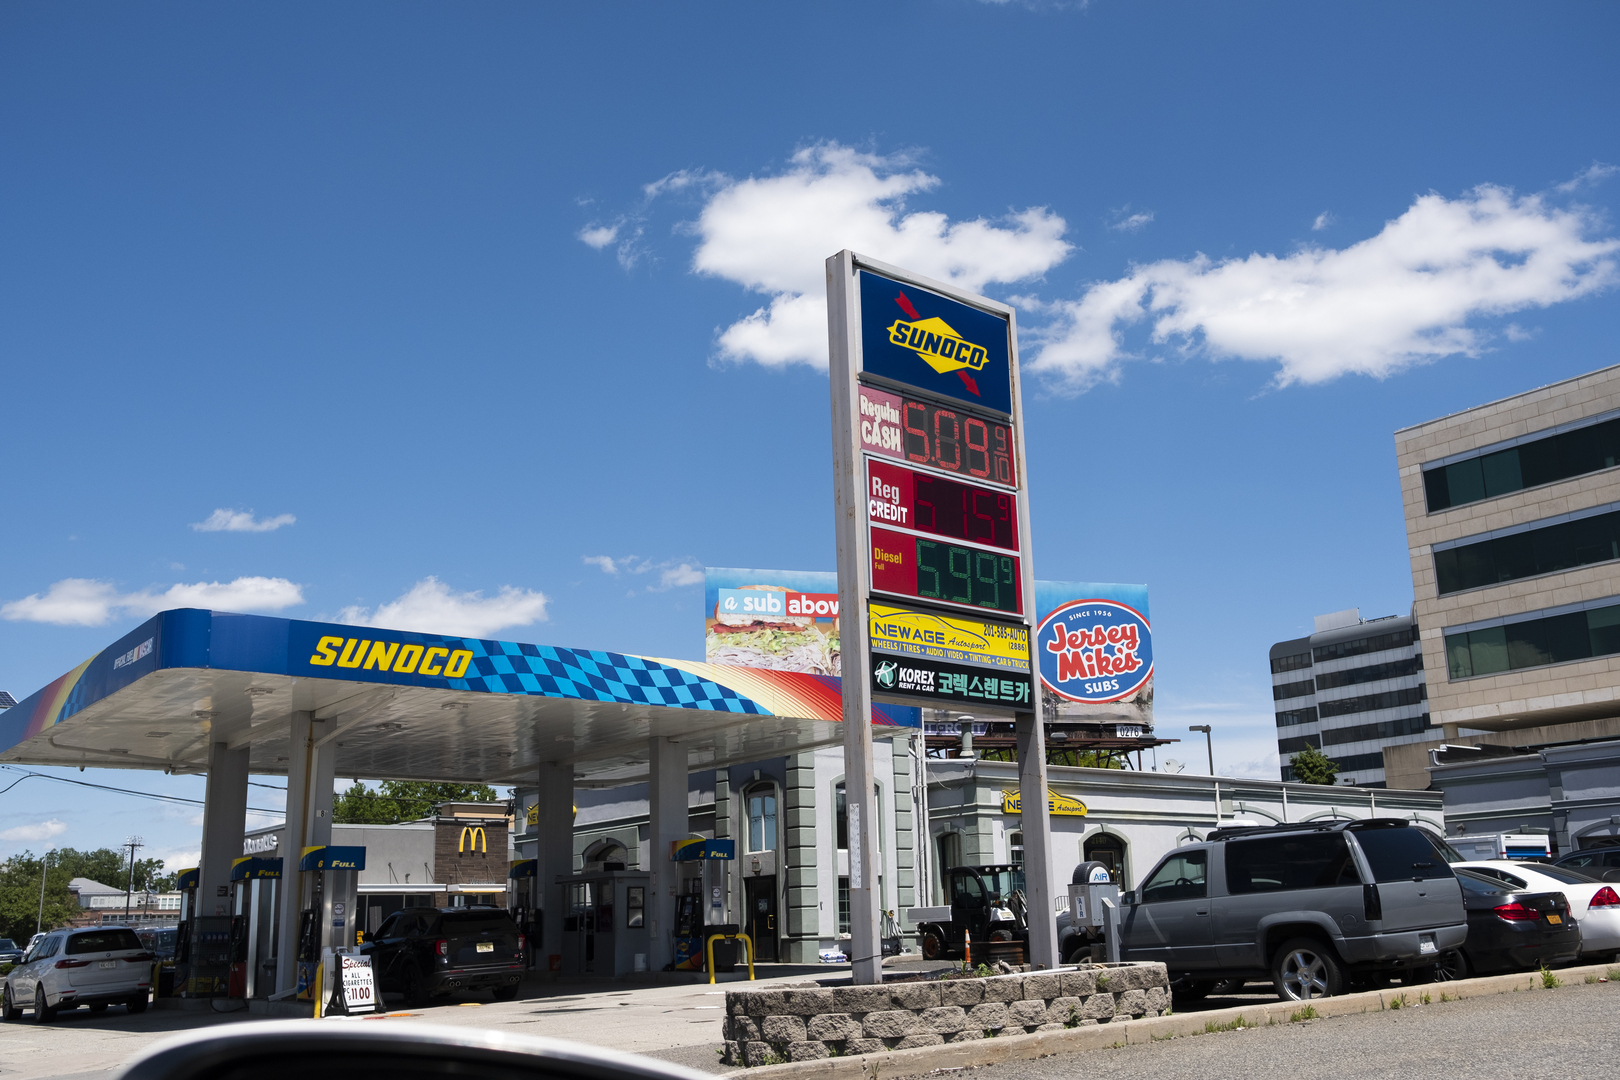 توقعات بتجاوز سعر غالون البنزين الـ6 دولارات في الولايات المتحدة بحلول أغسطس